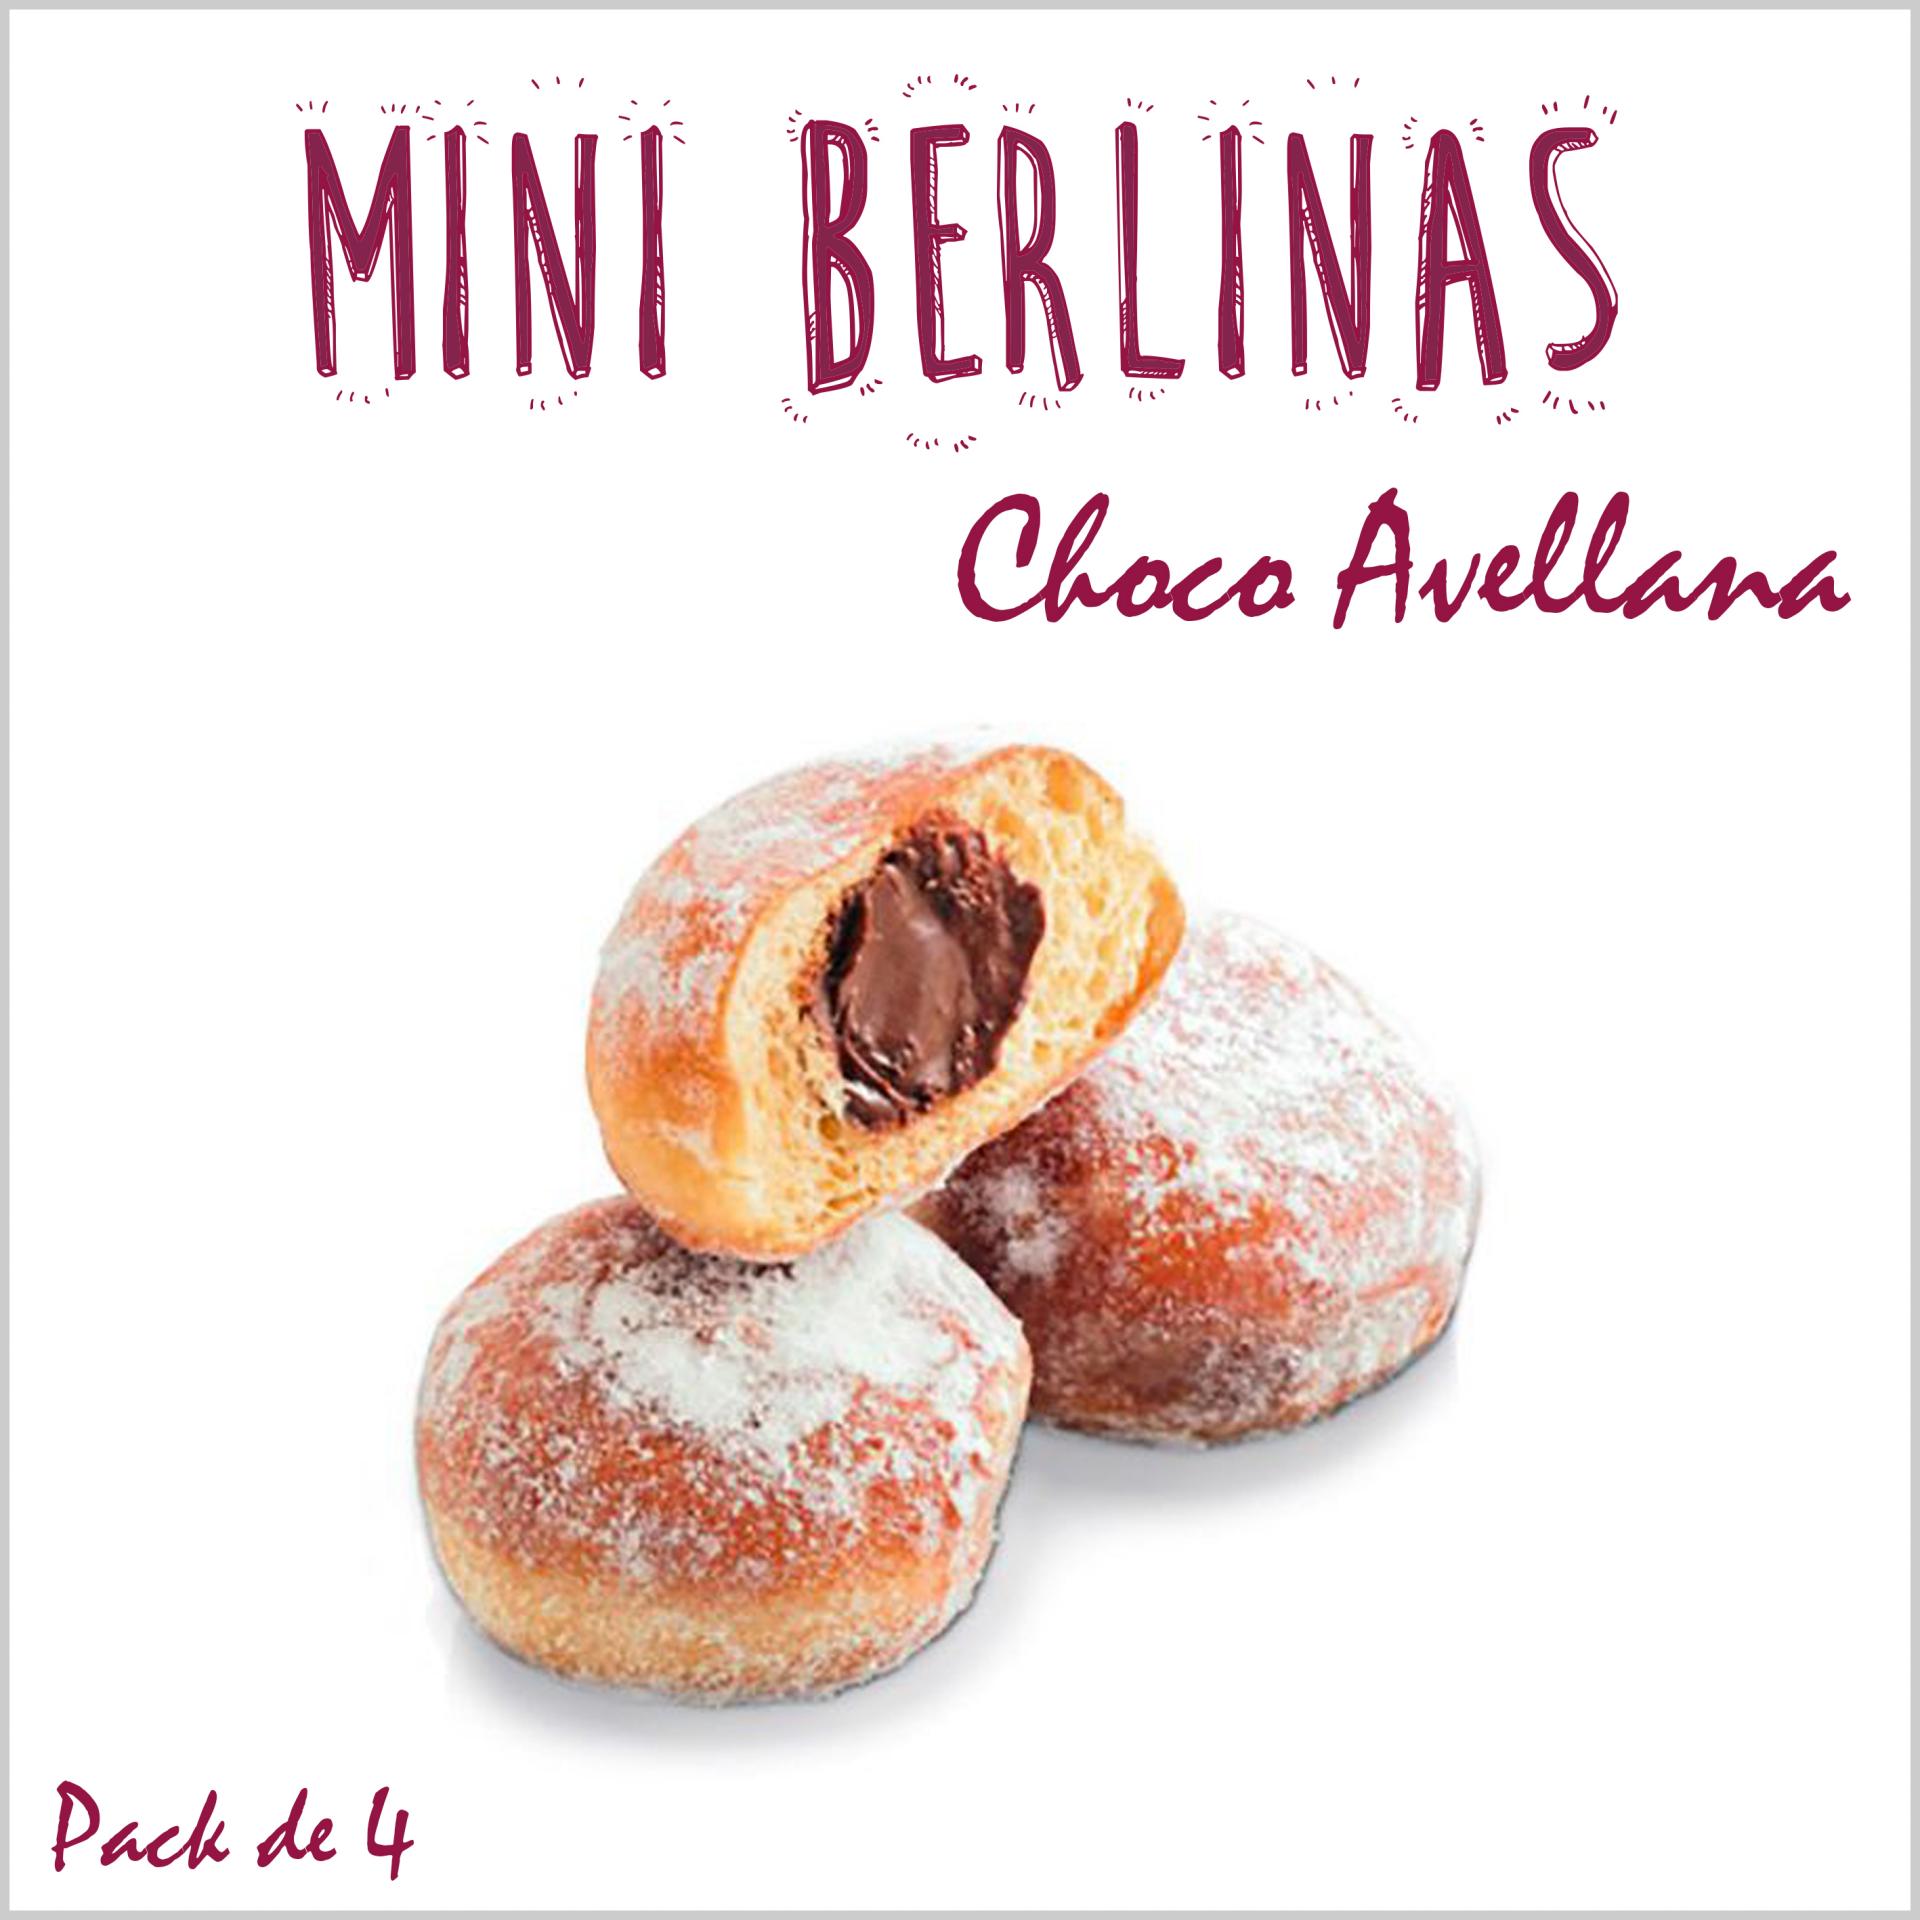 Mini berlinas Choco Avellana